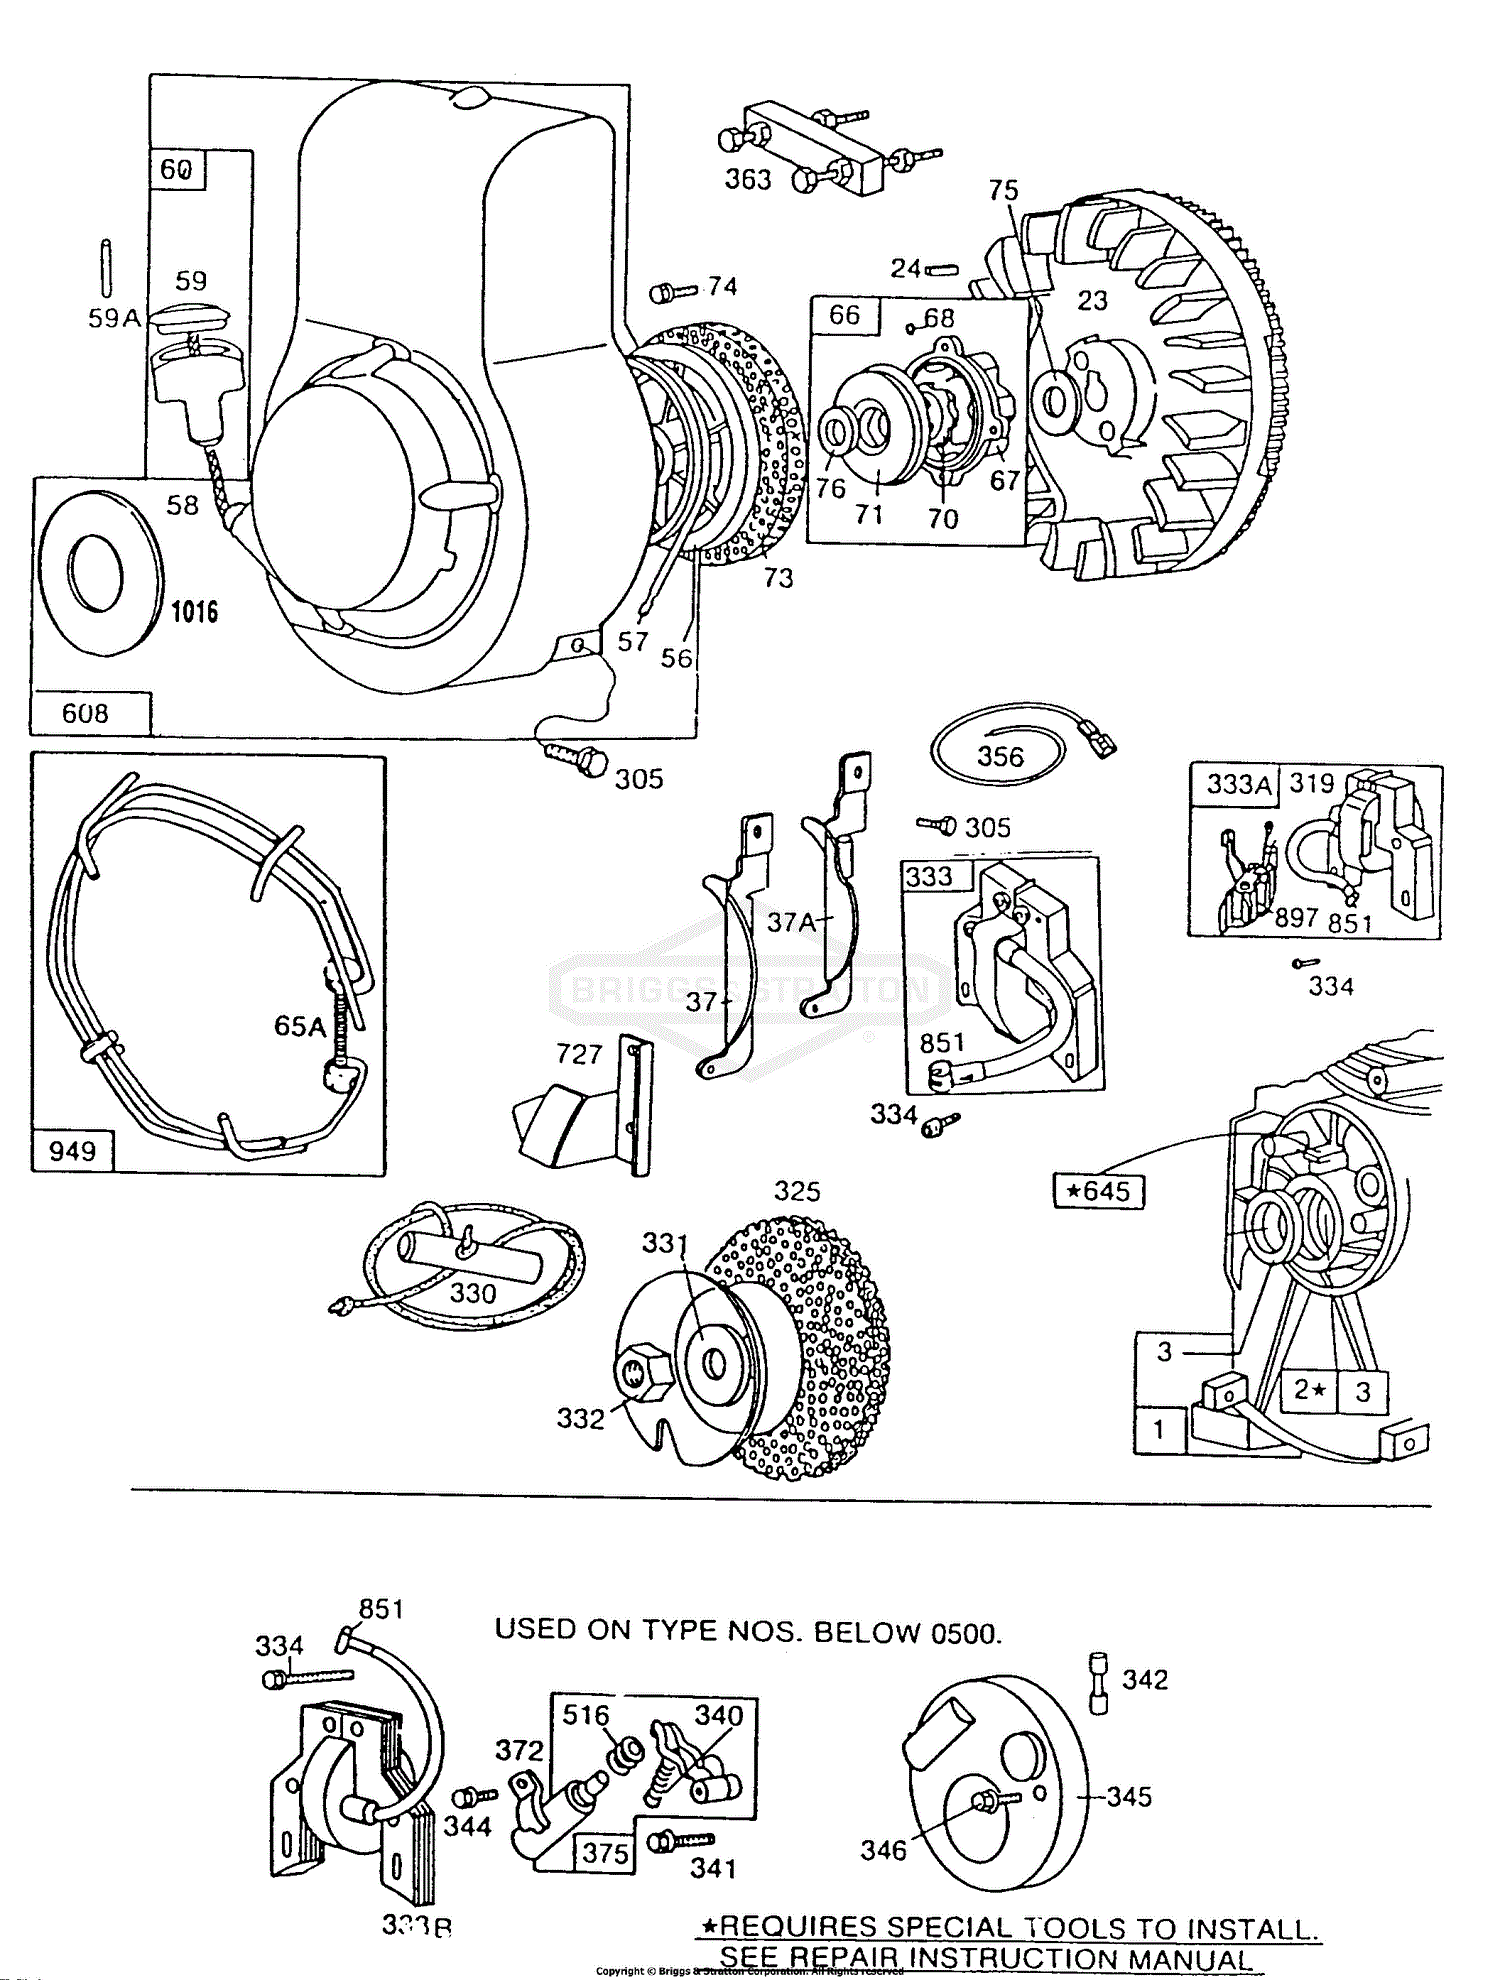 https://az417944.vo.msecnd.net/diagrams/manufacturer/briggs-stratton/briggs-stratton-engine/100000-19z999-series/112200-to-112299/112292-0703-01/blower-hsgs-rewind-flywheel/diagram.gif